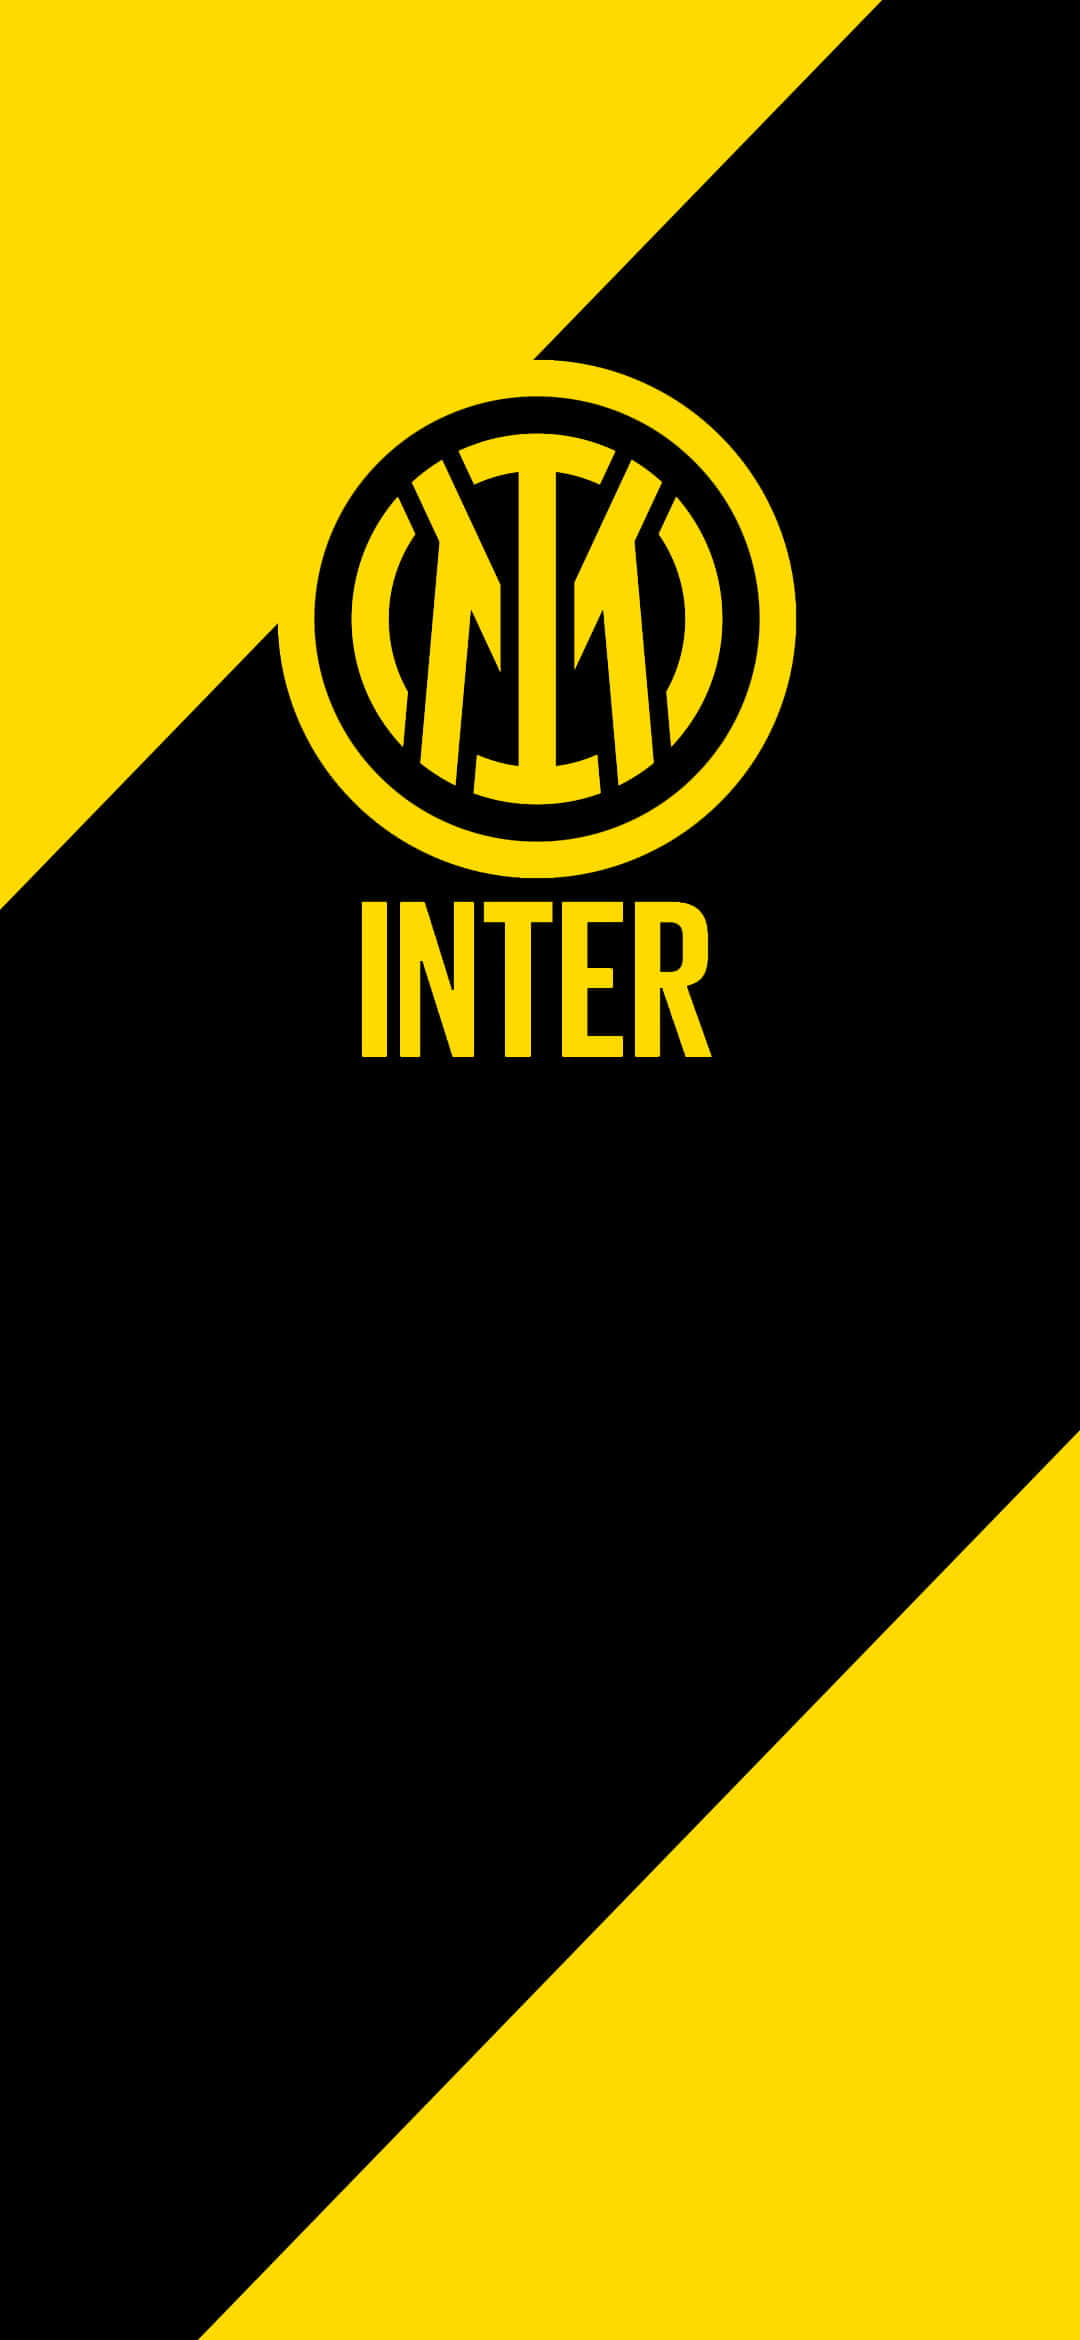 Inter Milan Champions League Final 2010 Wallpaper 3840x2160  rwallpapers